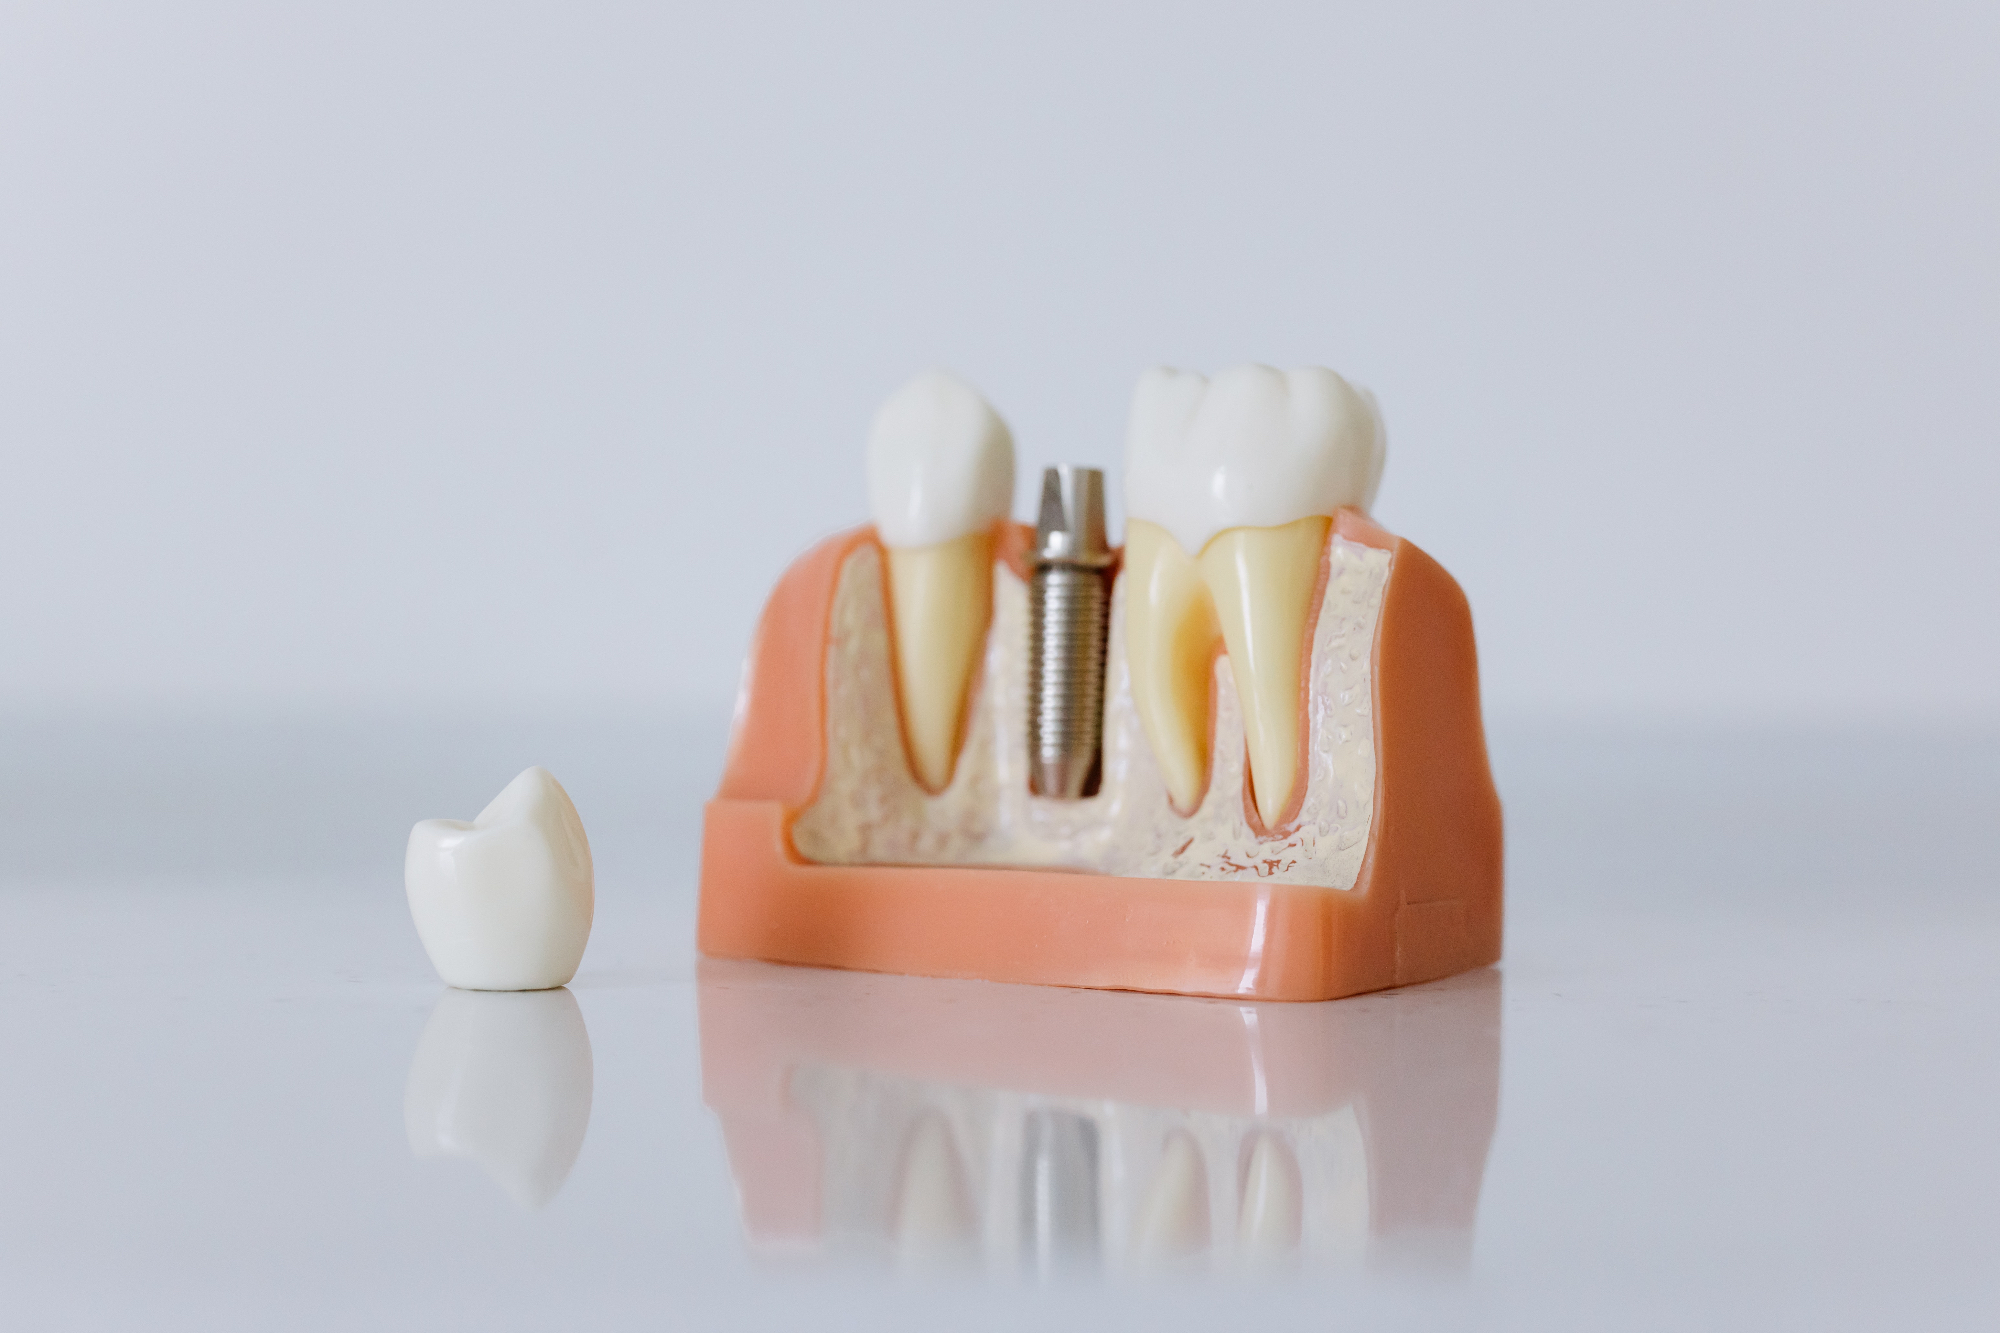 Zobni implantati kot trajna in daleč najboljša rešitev za manjkajoče zobe